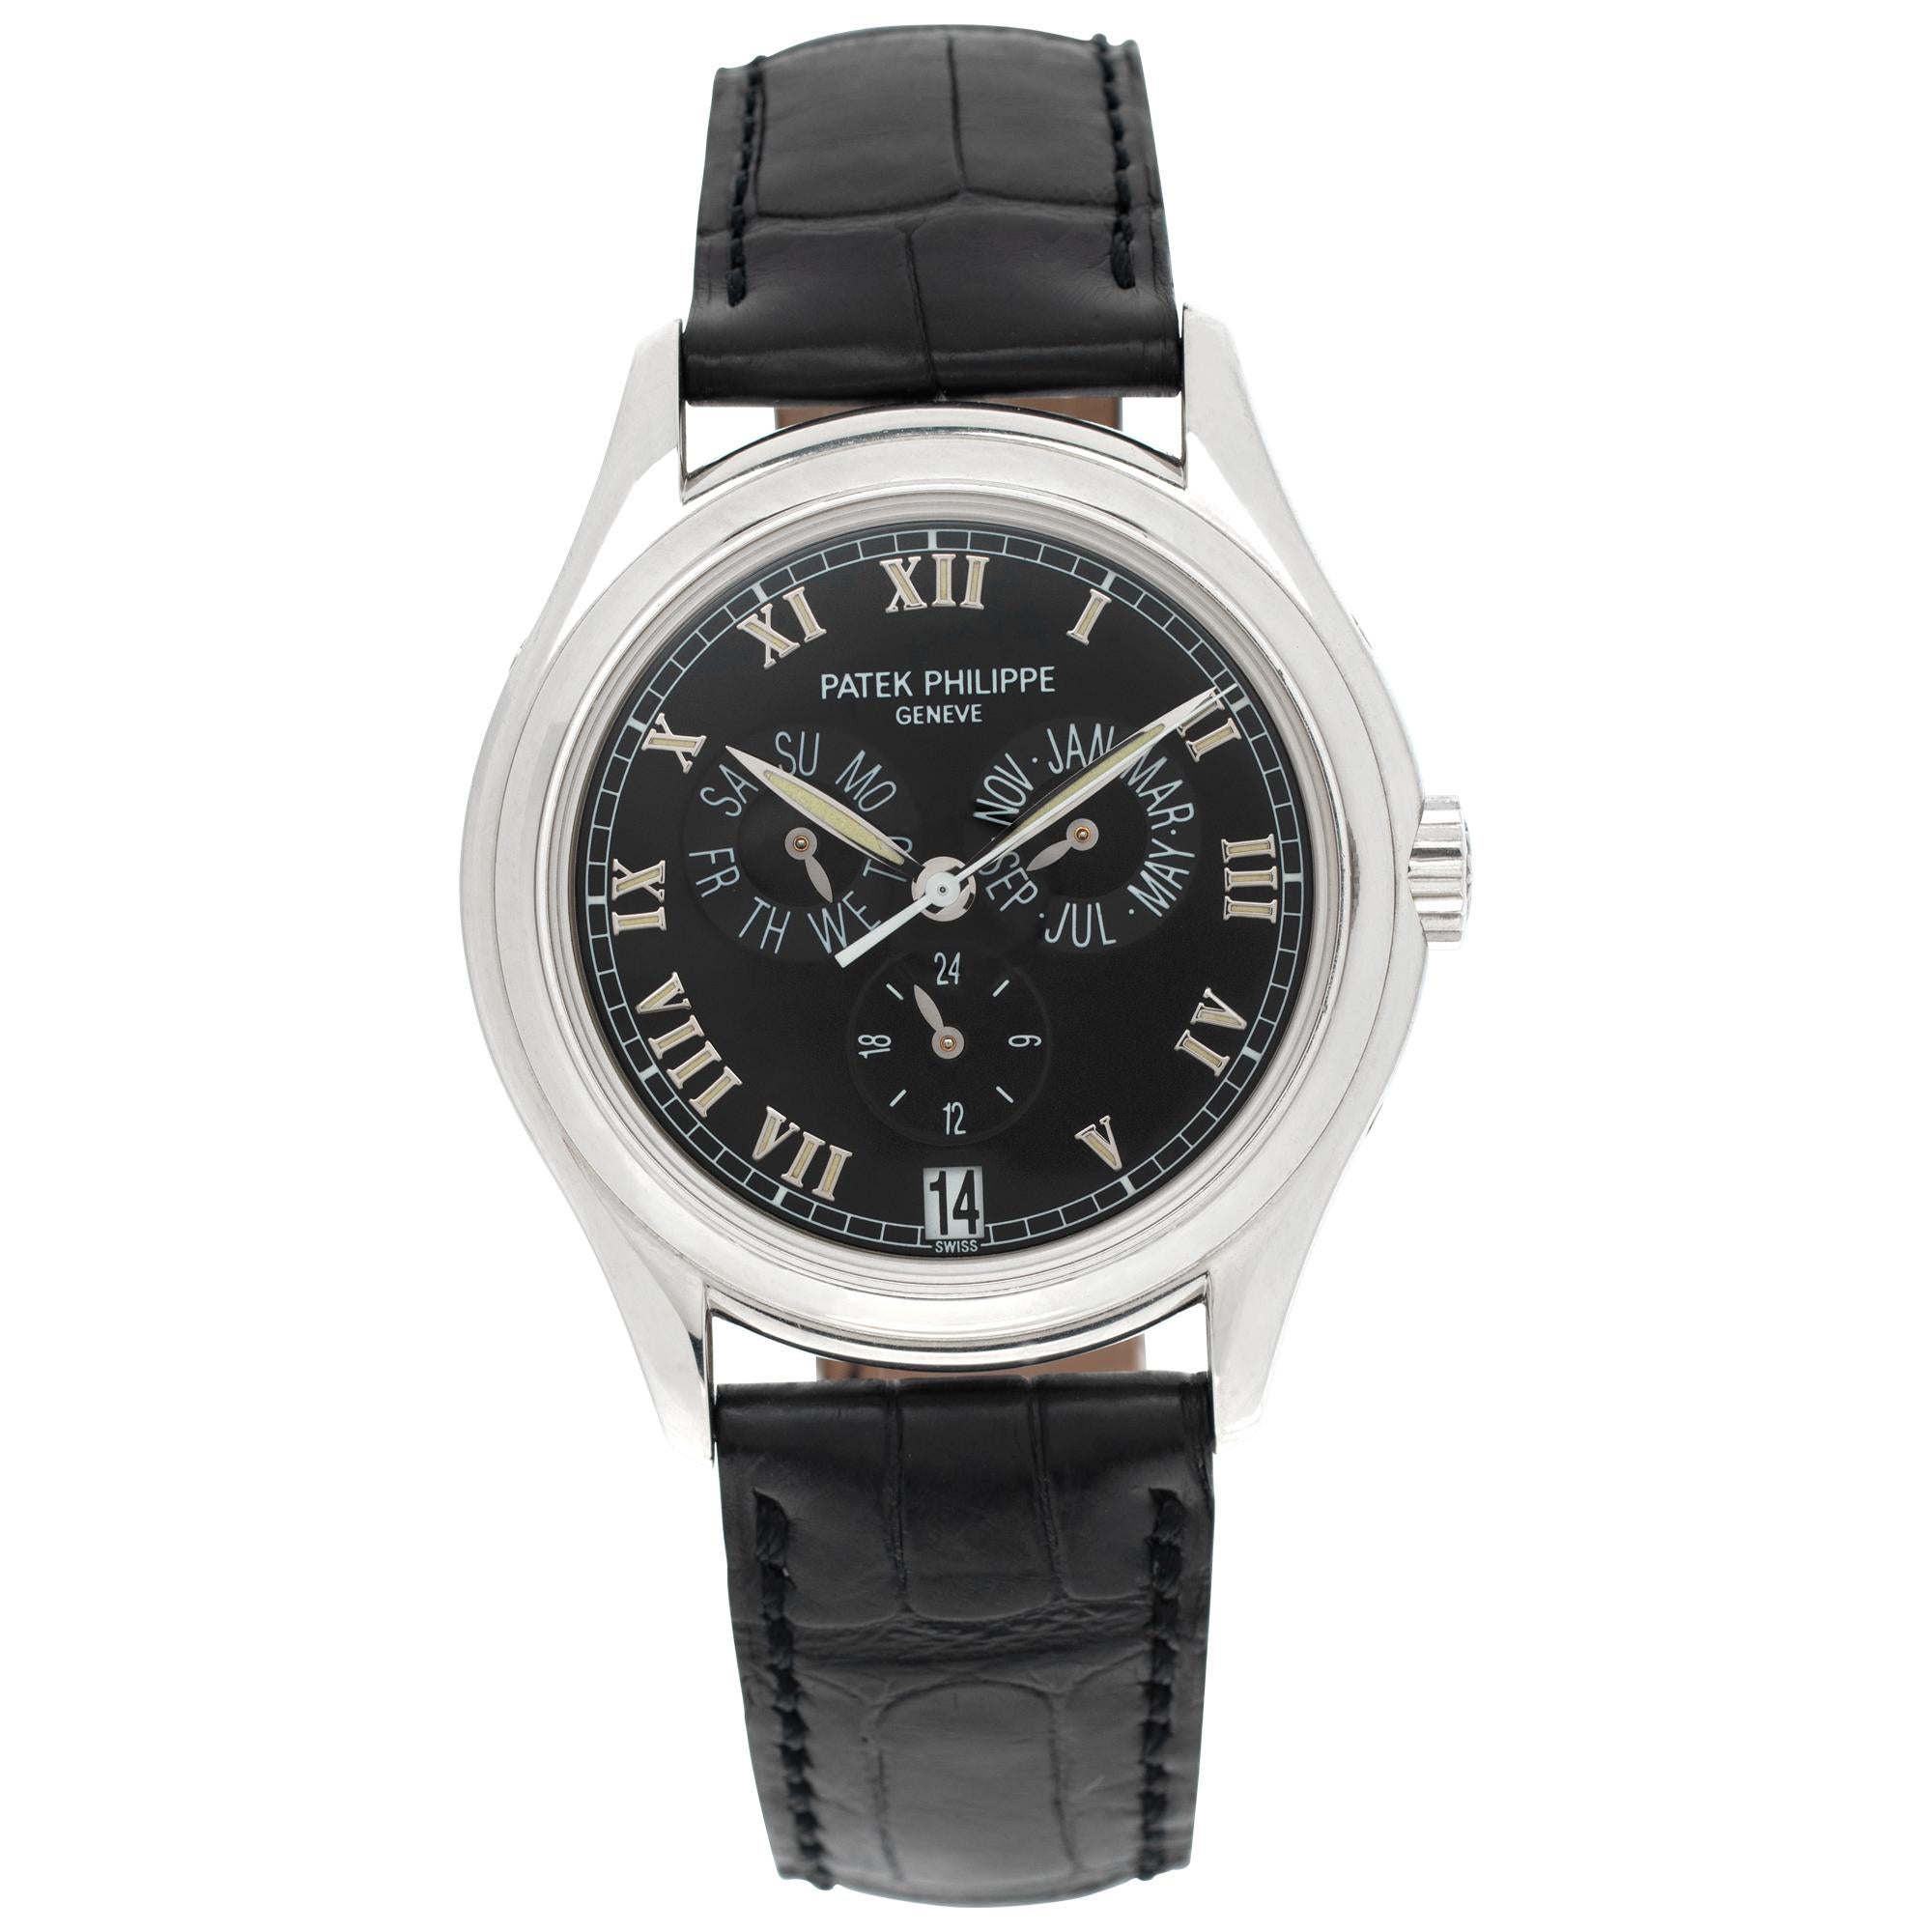 Patek Philippe Annual Calendar Platinum Wristwatch Ref 5035p